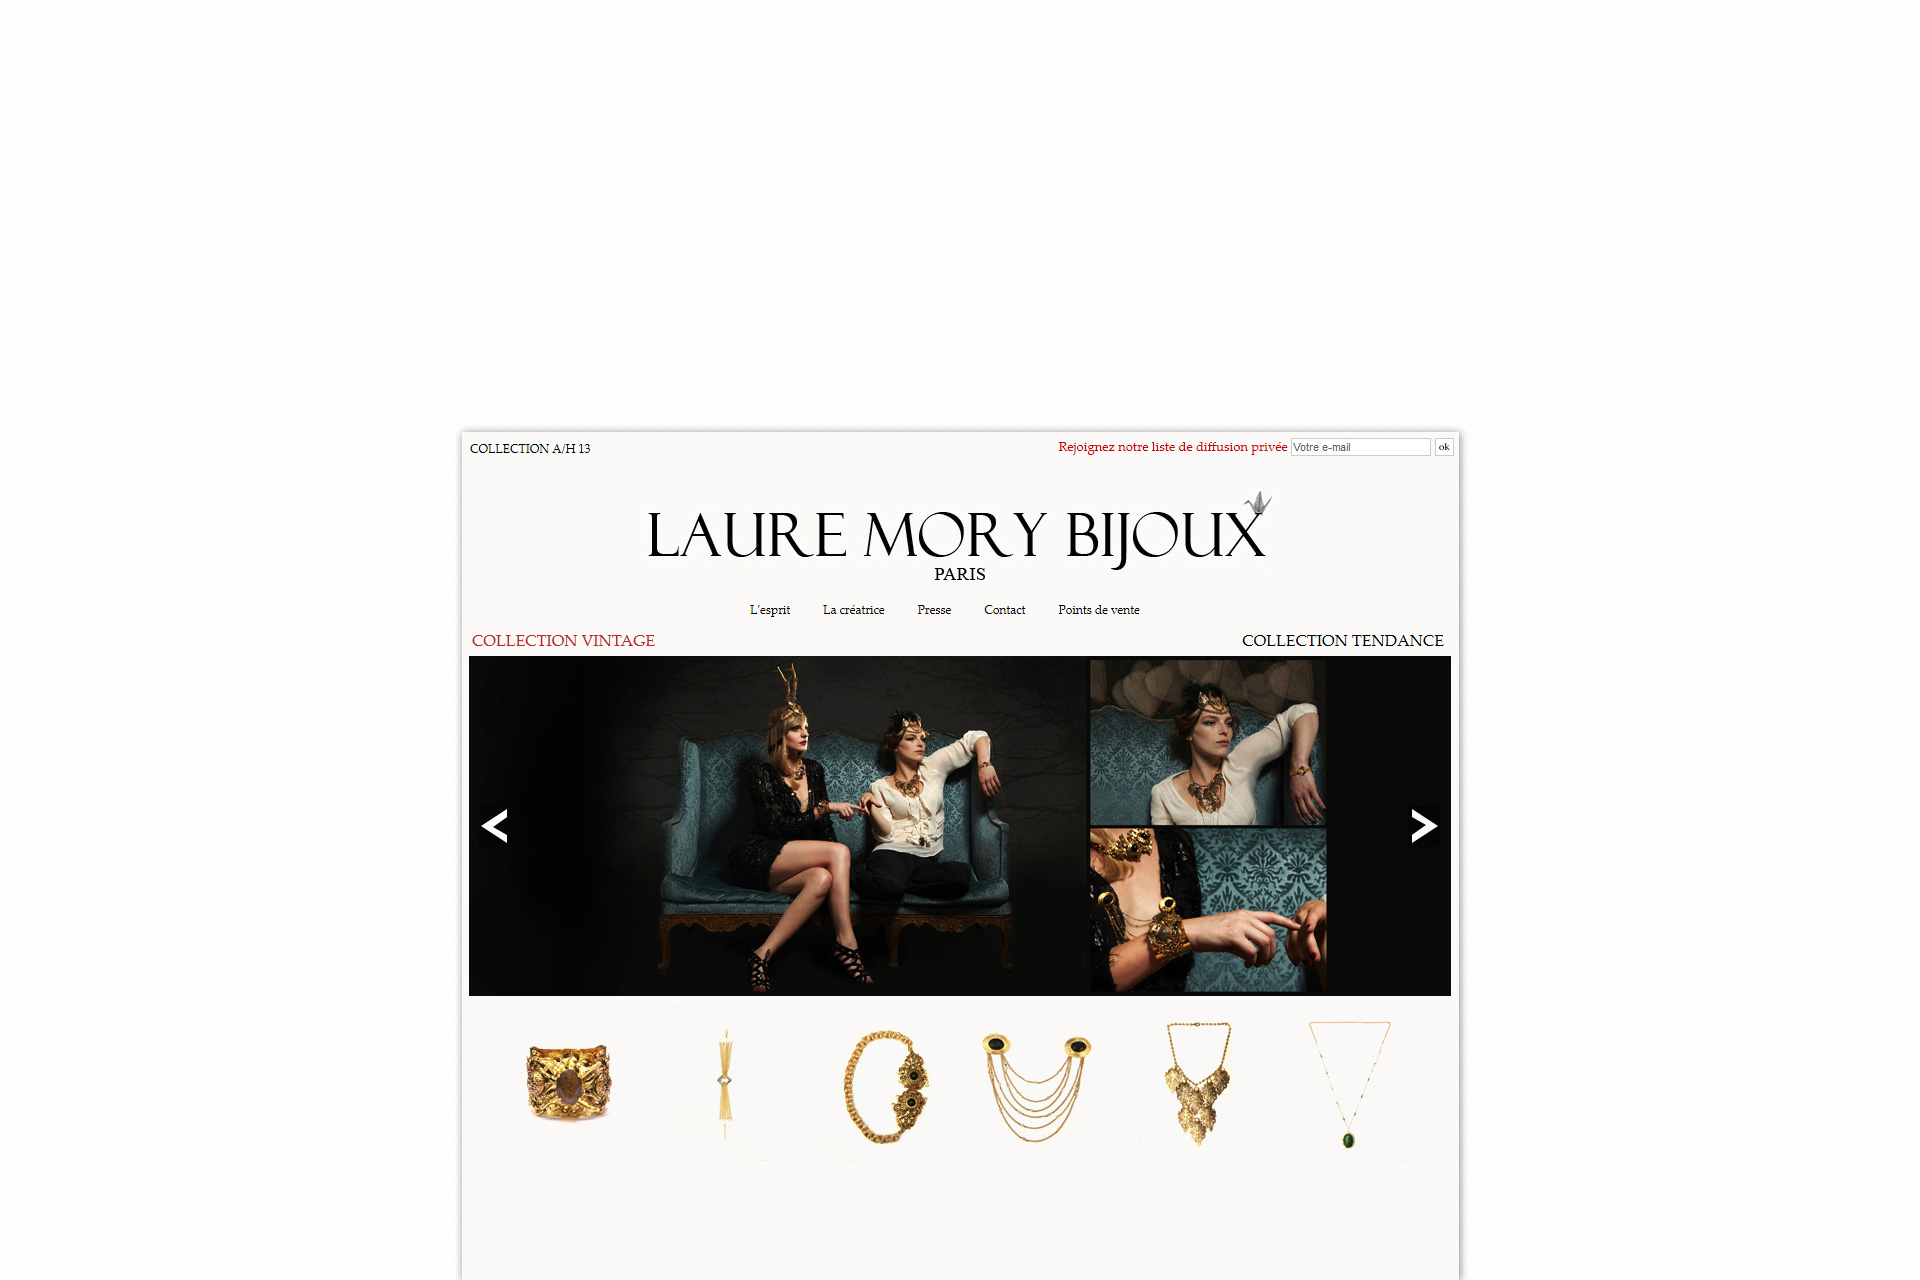 lauremorybijoux website